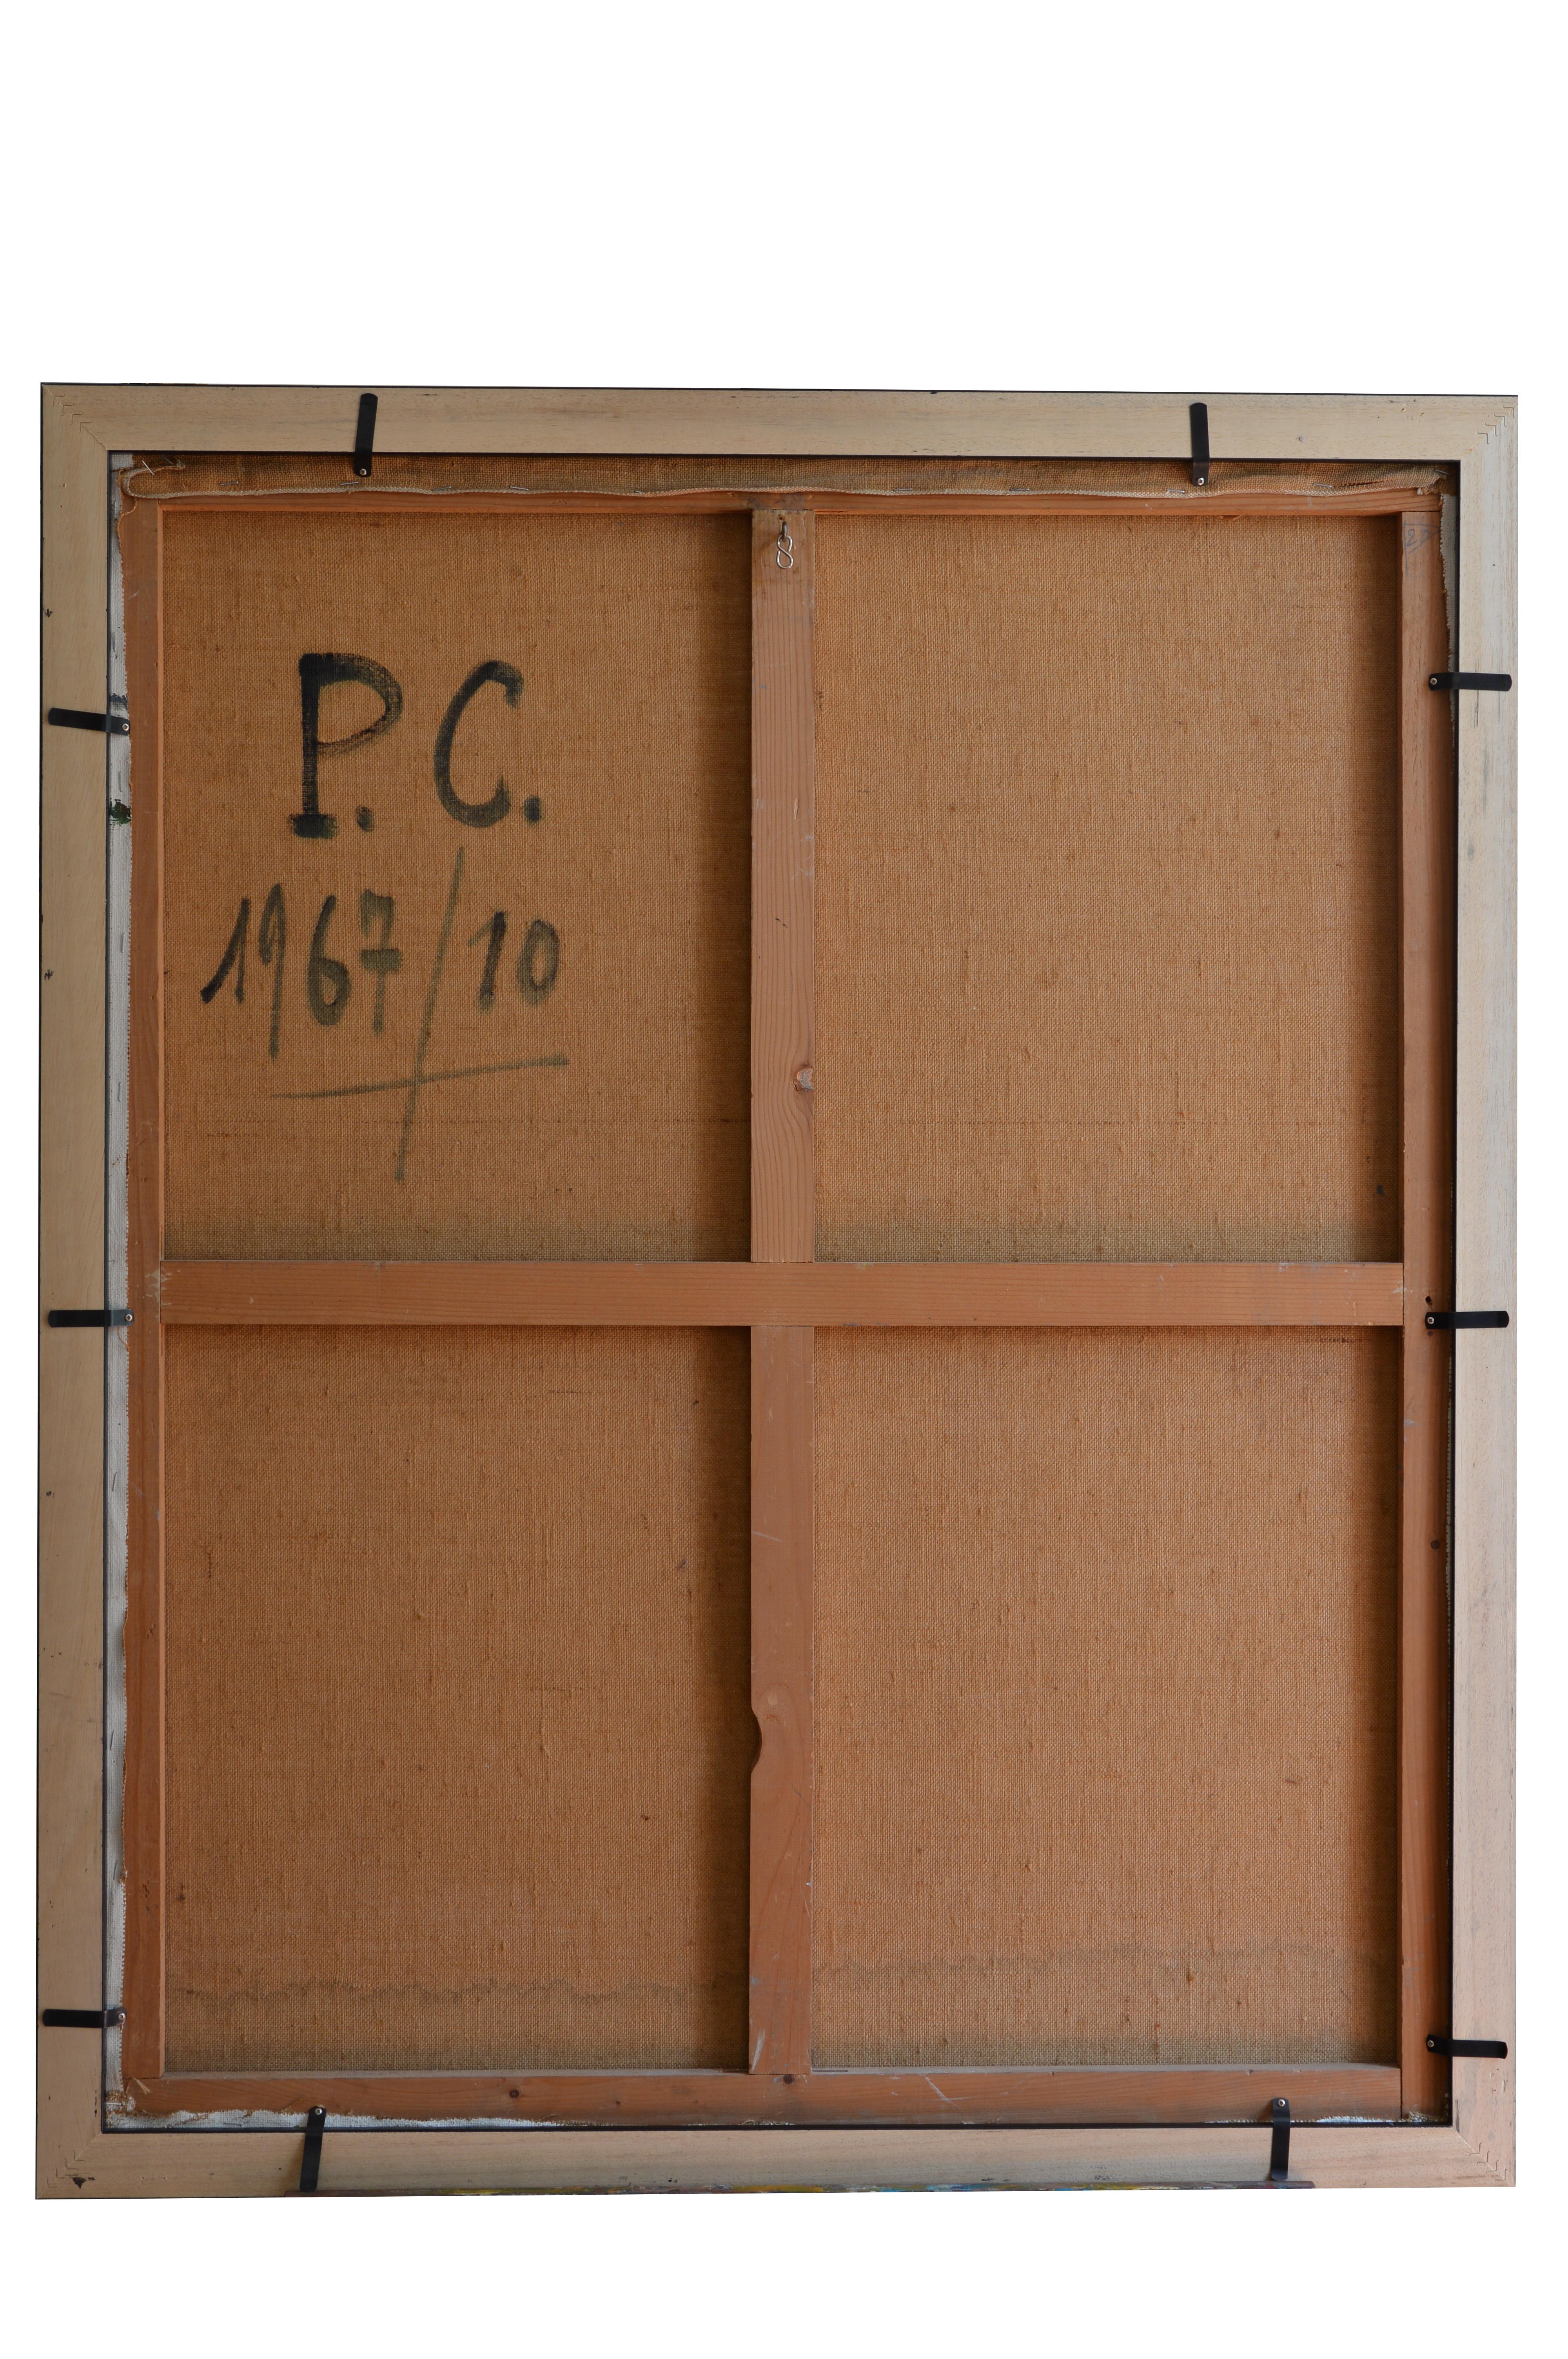 Huile sur toile de Paul Clement (1906-), France, 1967. Bories-en-Provence près de Gordes. Dimensions : avec cadre : 106x87 cm - 41.7x34.25 inches, sans cadre : 100x81 cm - 39.4x31.9 inches, format 40F. Signé en bas à gauche 